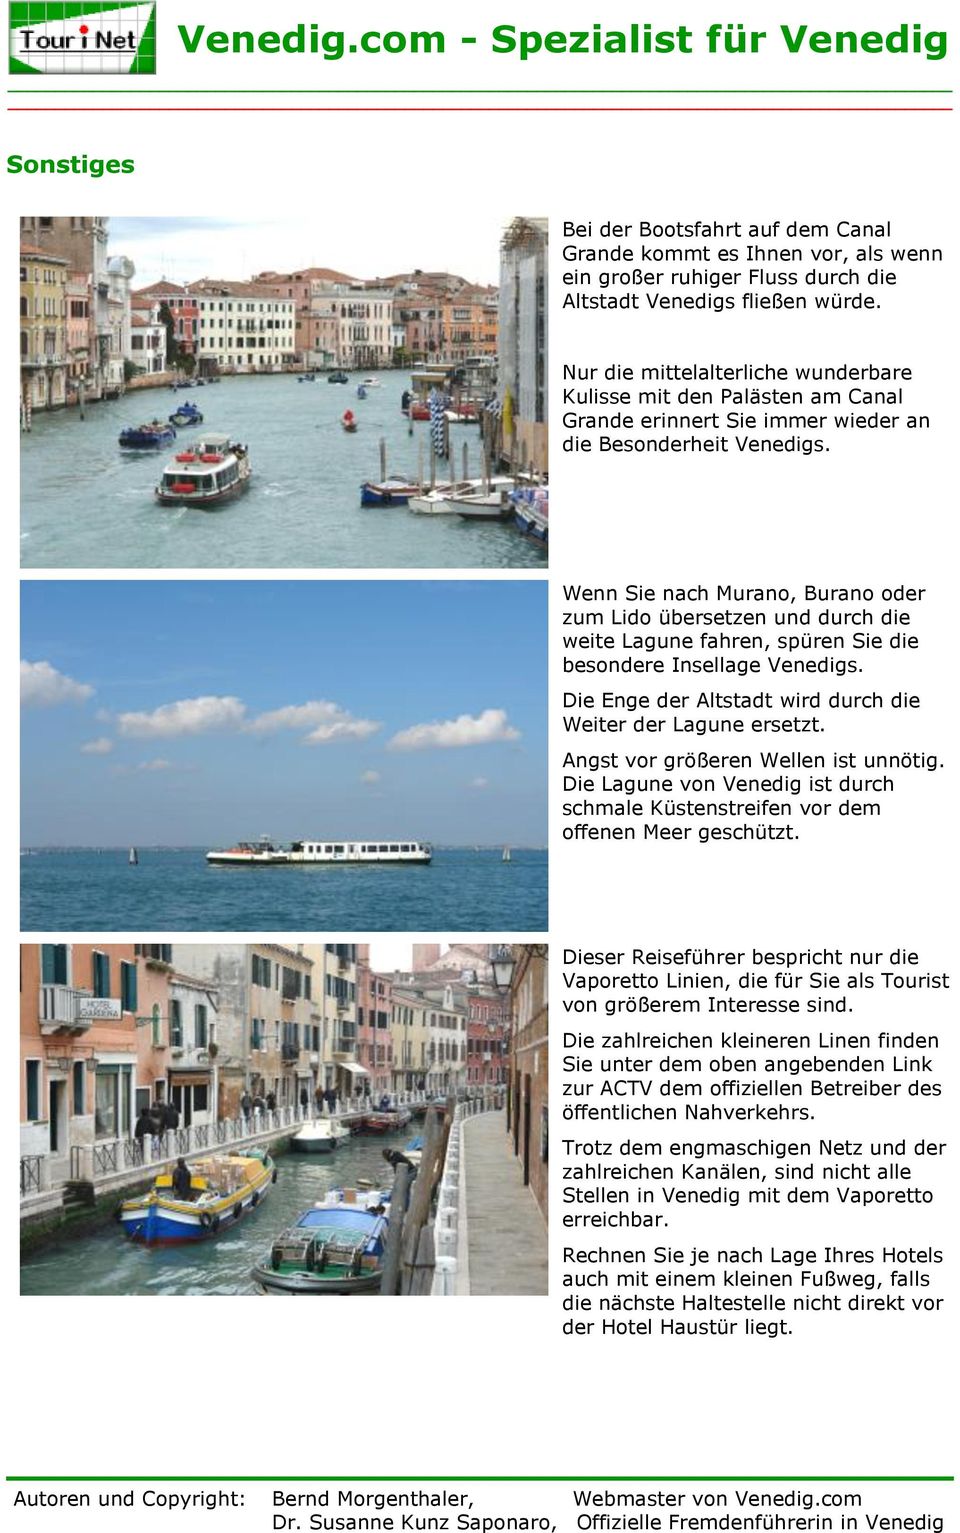 Wenn Sie nach Murano, Burano oder zum Lido übersetzen und durch die weite Lagune fahren, spüren Sie die besondere Insellage Venedigs. Die Enge der Altstadt wird durch die Weiter der Lagune ersetzt.